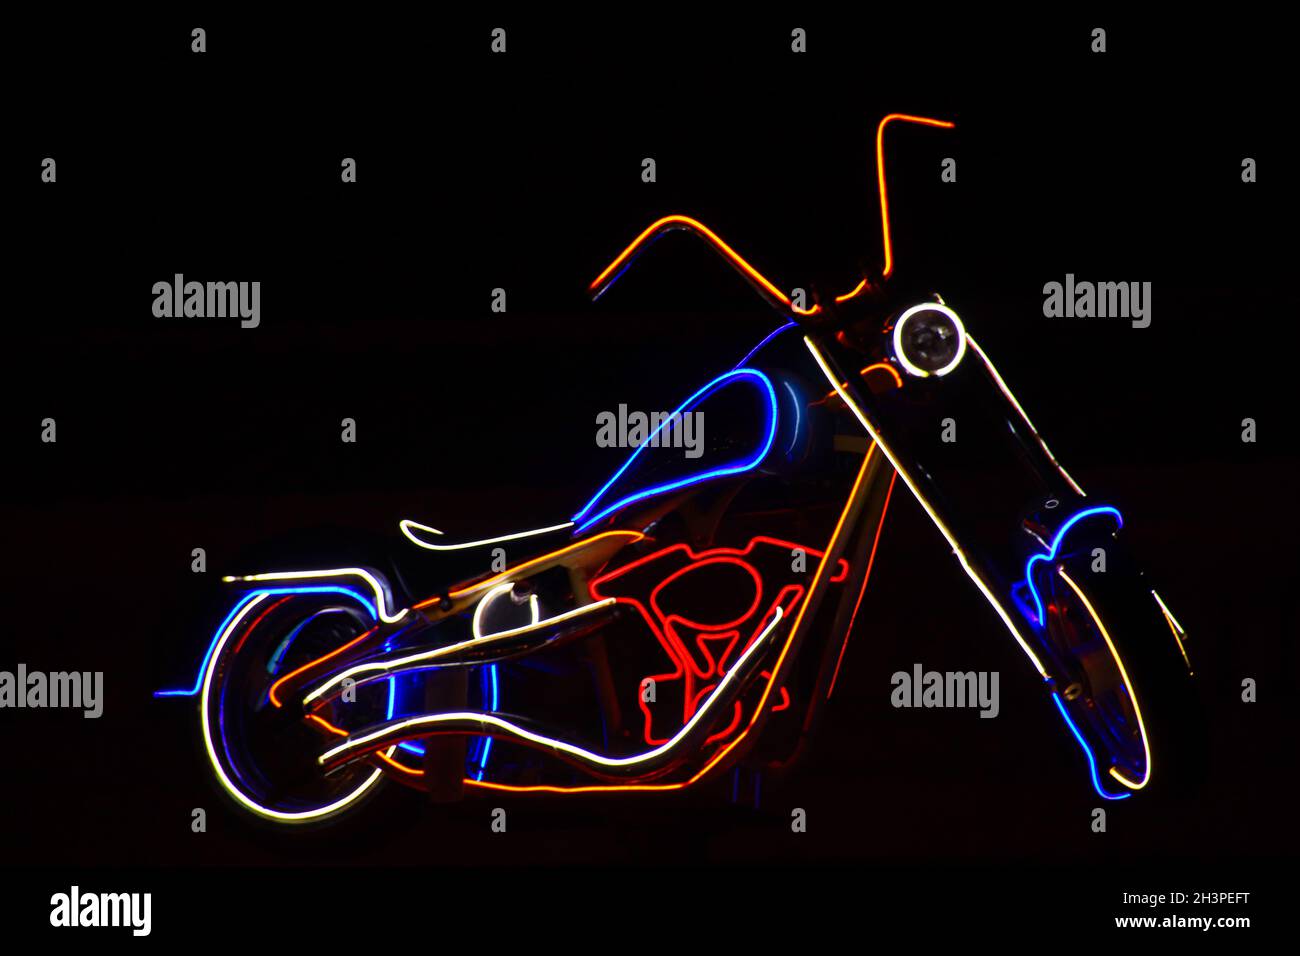 Neonlicht-Design in Form eines Motorrads, das die Nacht erhellt Stockfoto